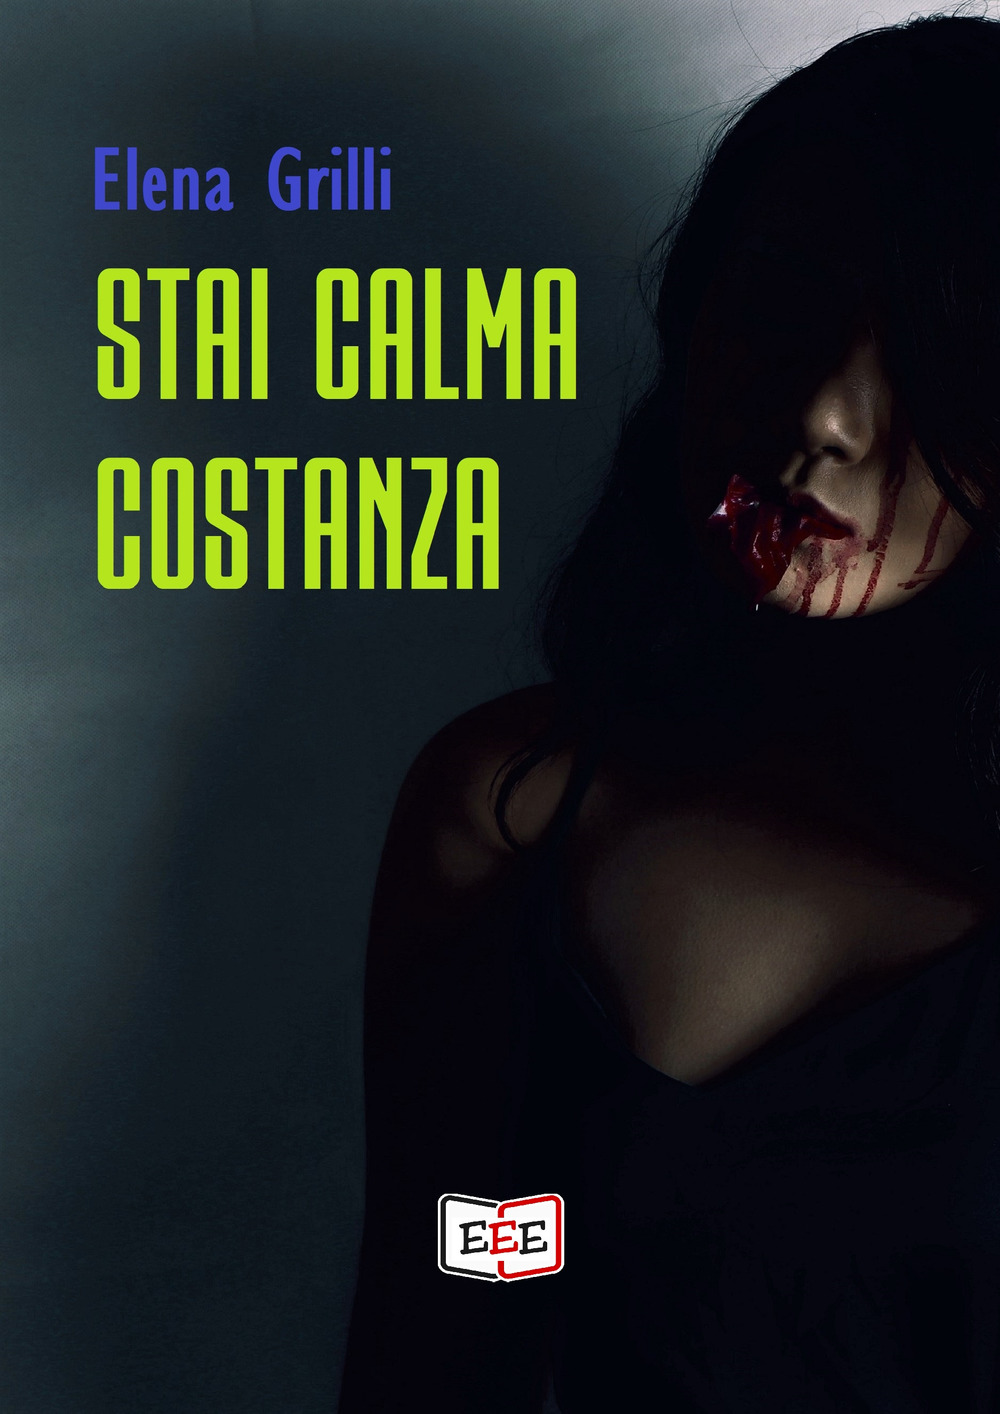 Image of Stai calma Costanza